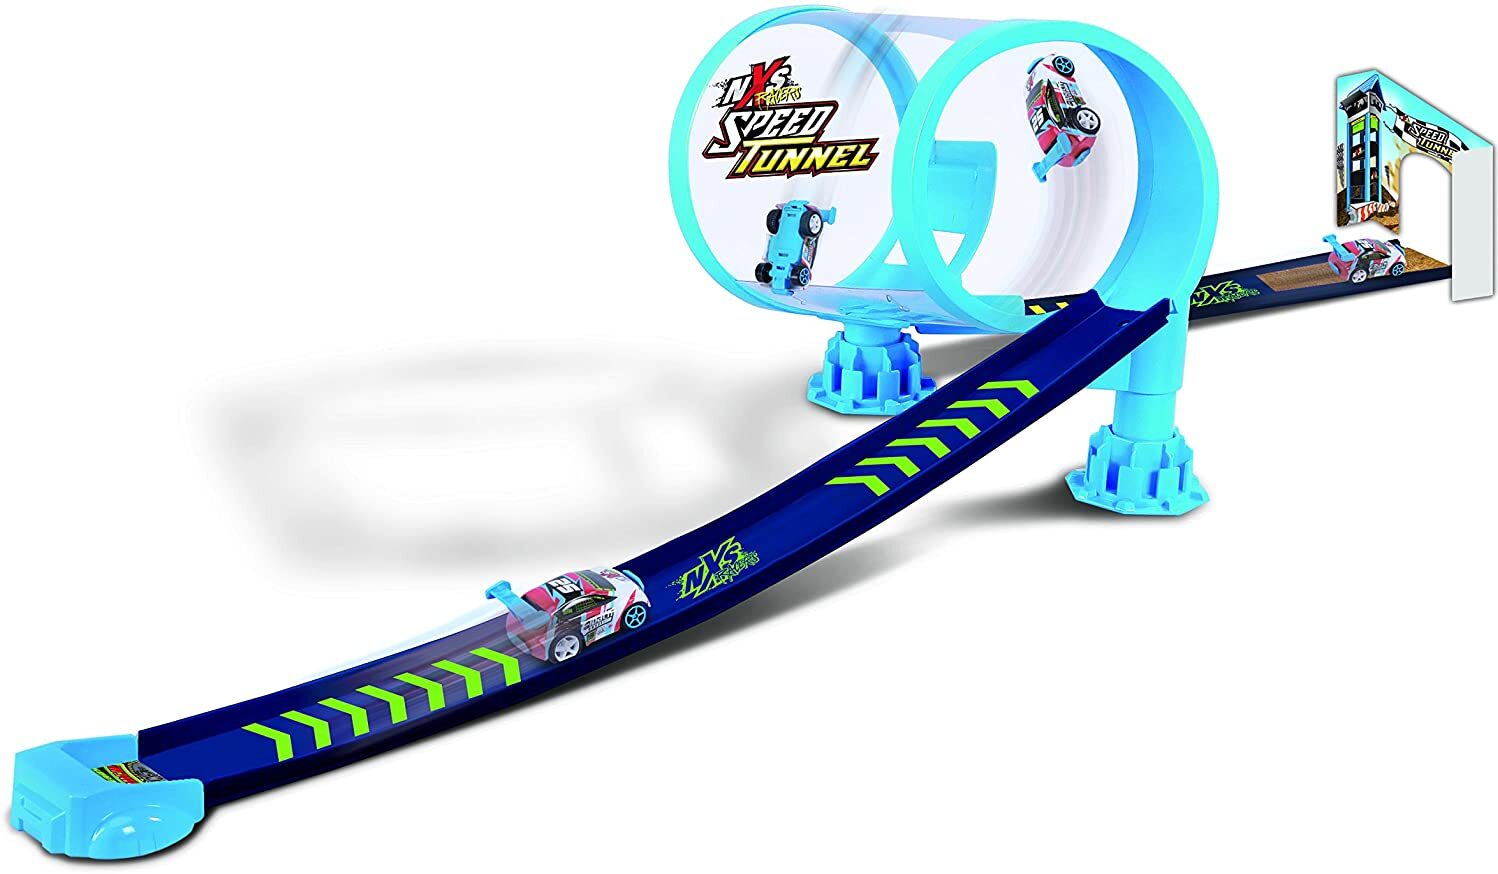 Maisto NXS Racers Play-Set: Rennstrecke mit Speed-Tunnel, inkl. Aufziehauto, hohe Geschwindigkeit, ab 3 Jahren (512268)